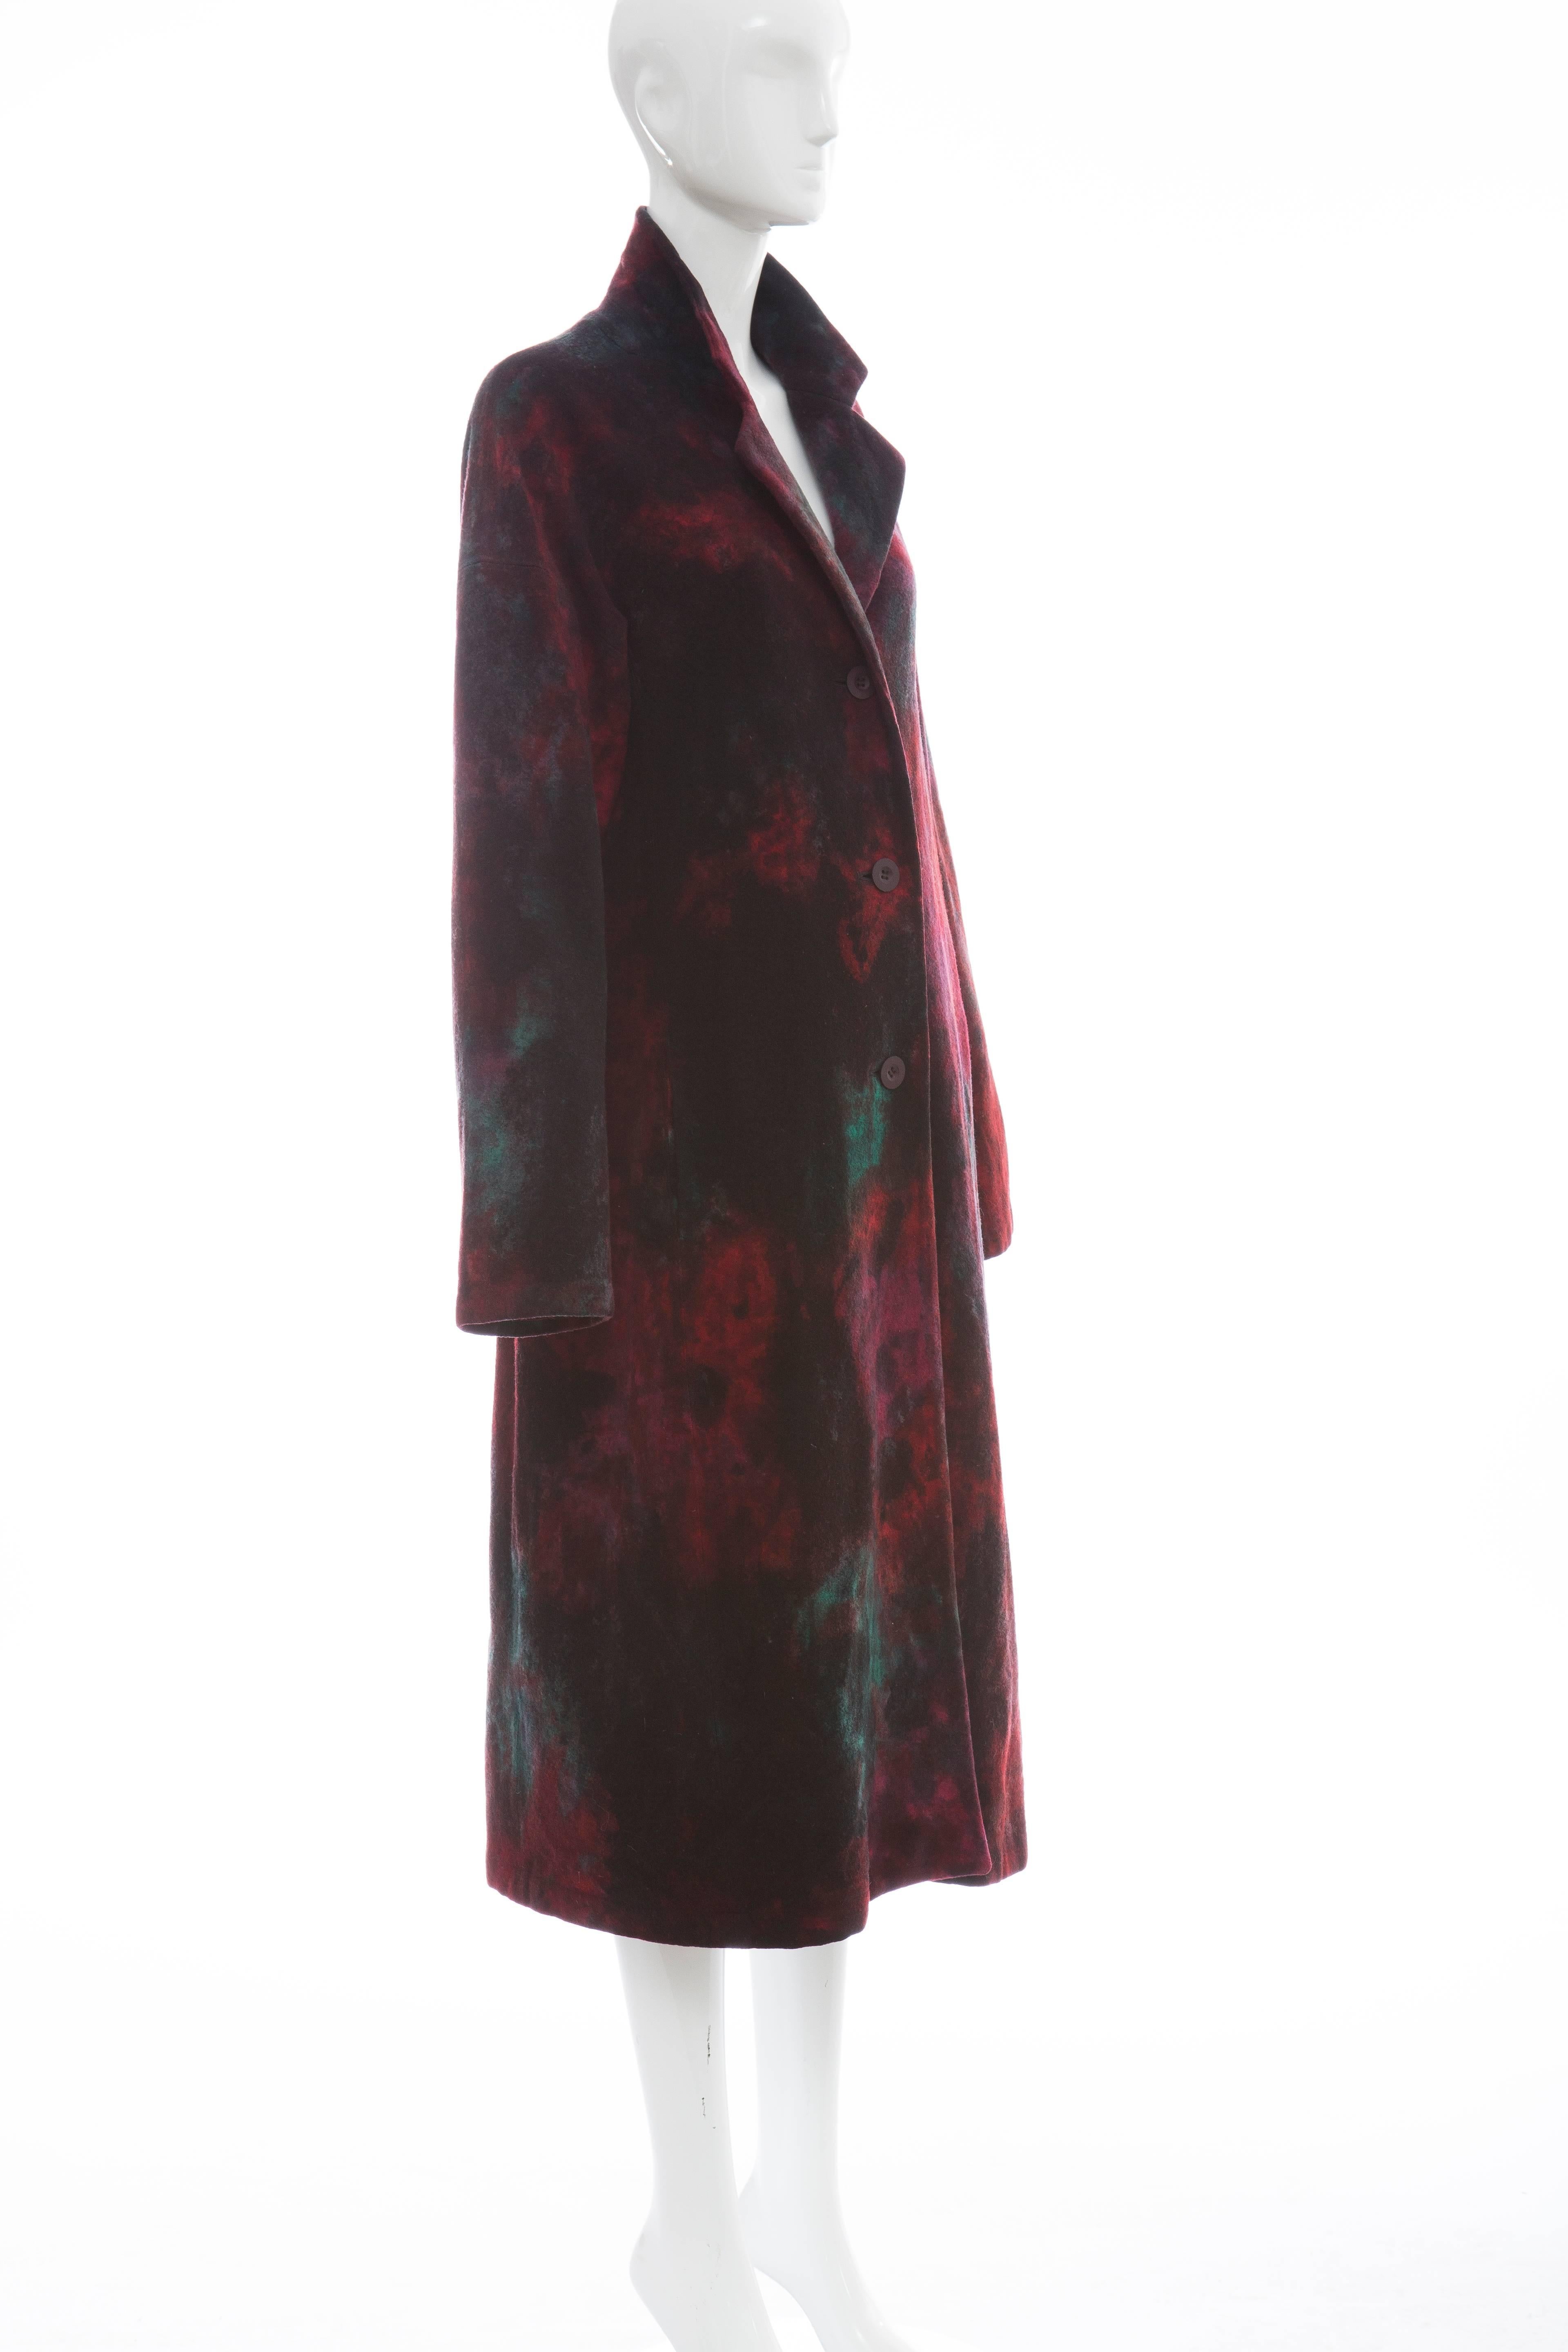 Women's Issey Miyake Tie Die Wool Felt Button Front Silk LIned, Coat, Circa 1990's